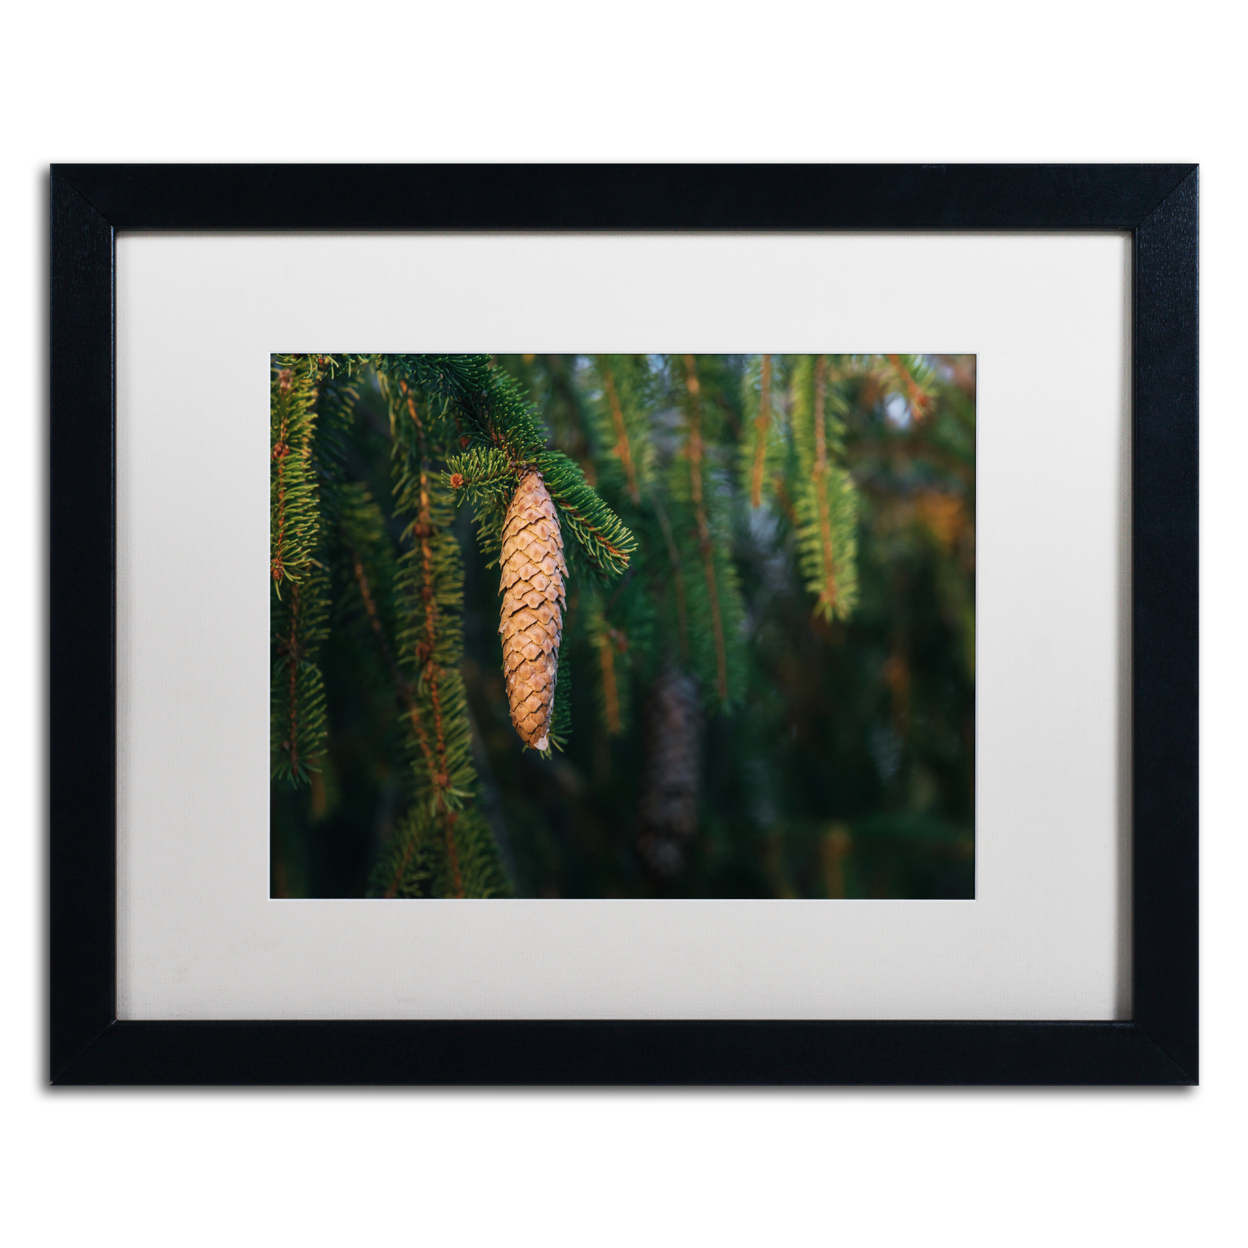 Jason Shaffer 'Pine' Black Wooden Framed Art 18 X 22 Inches